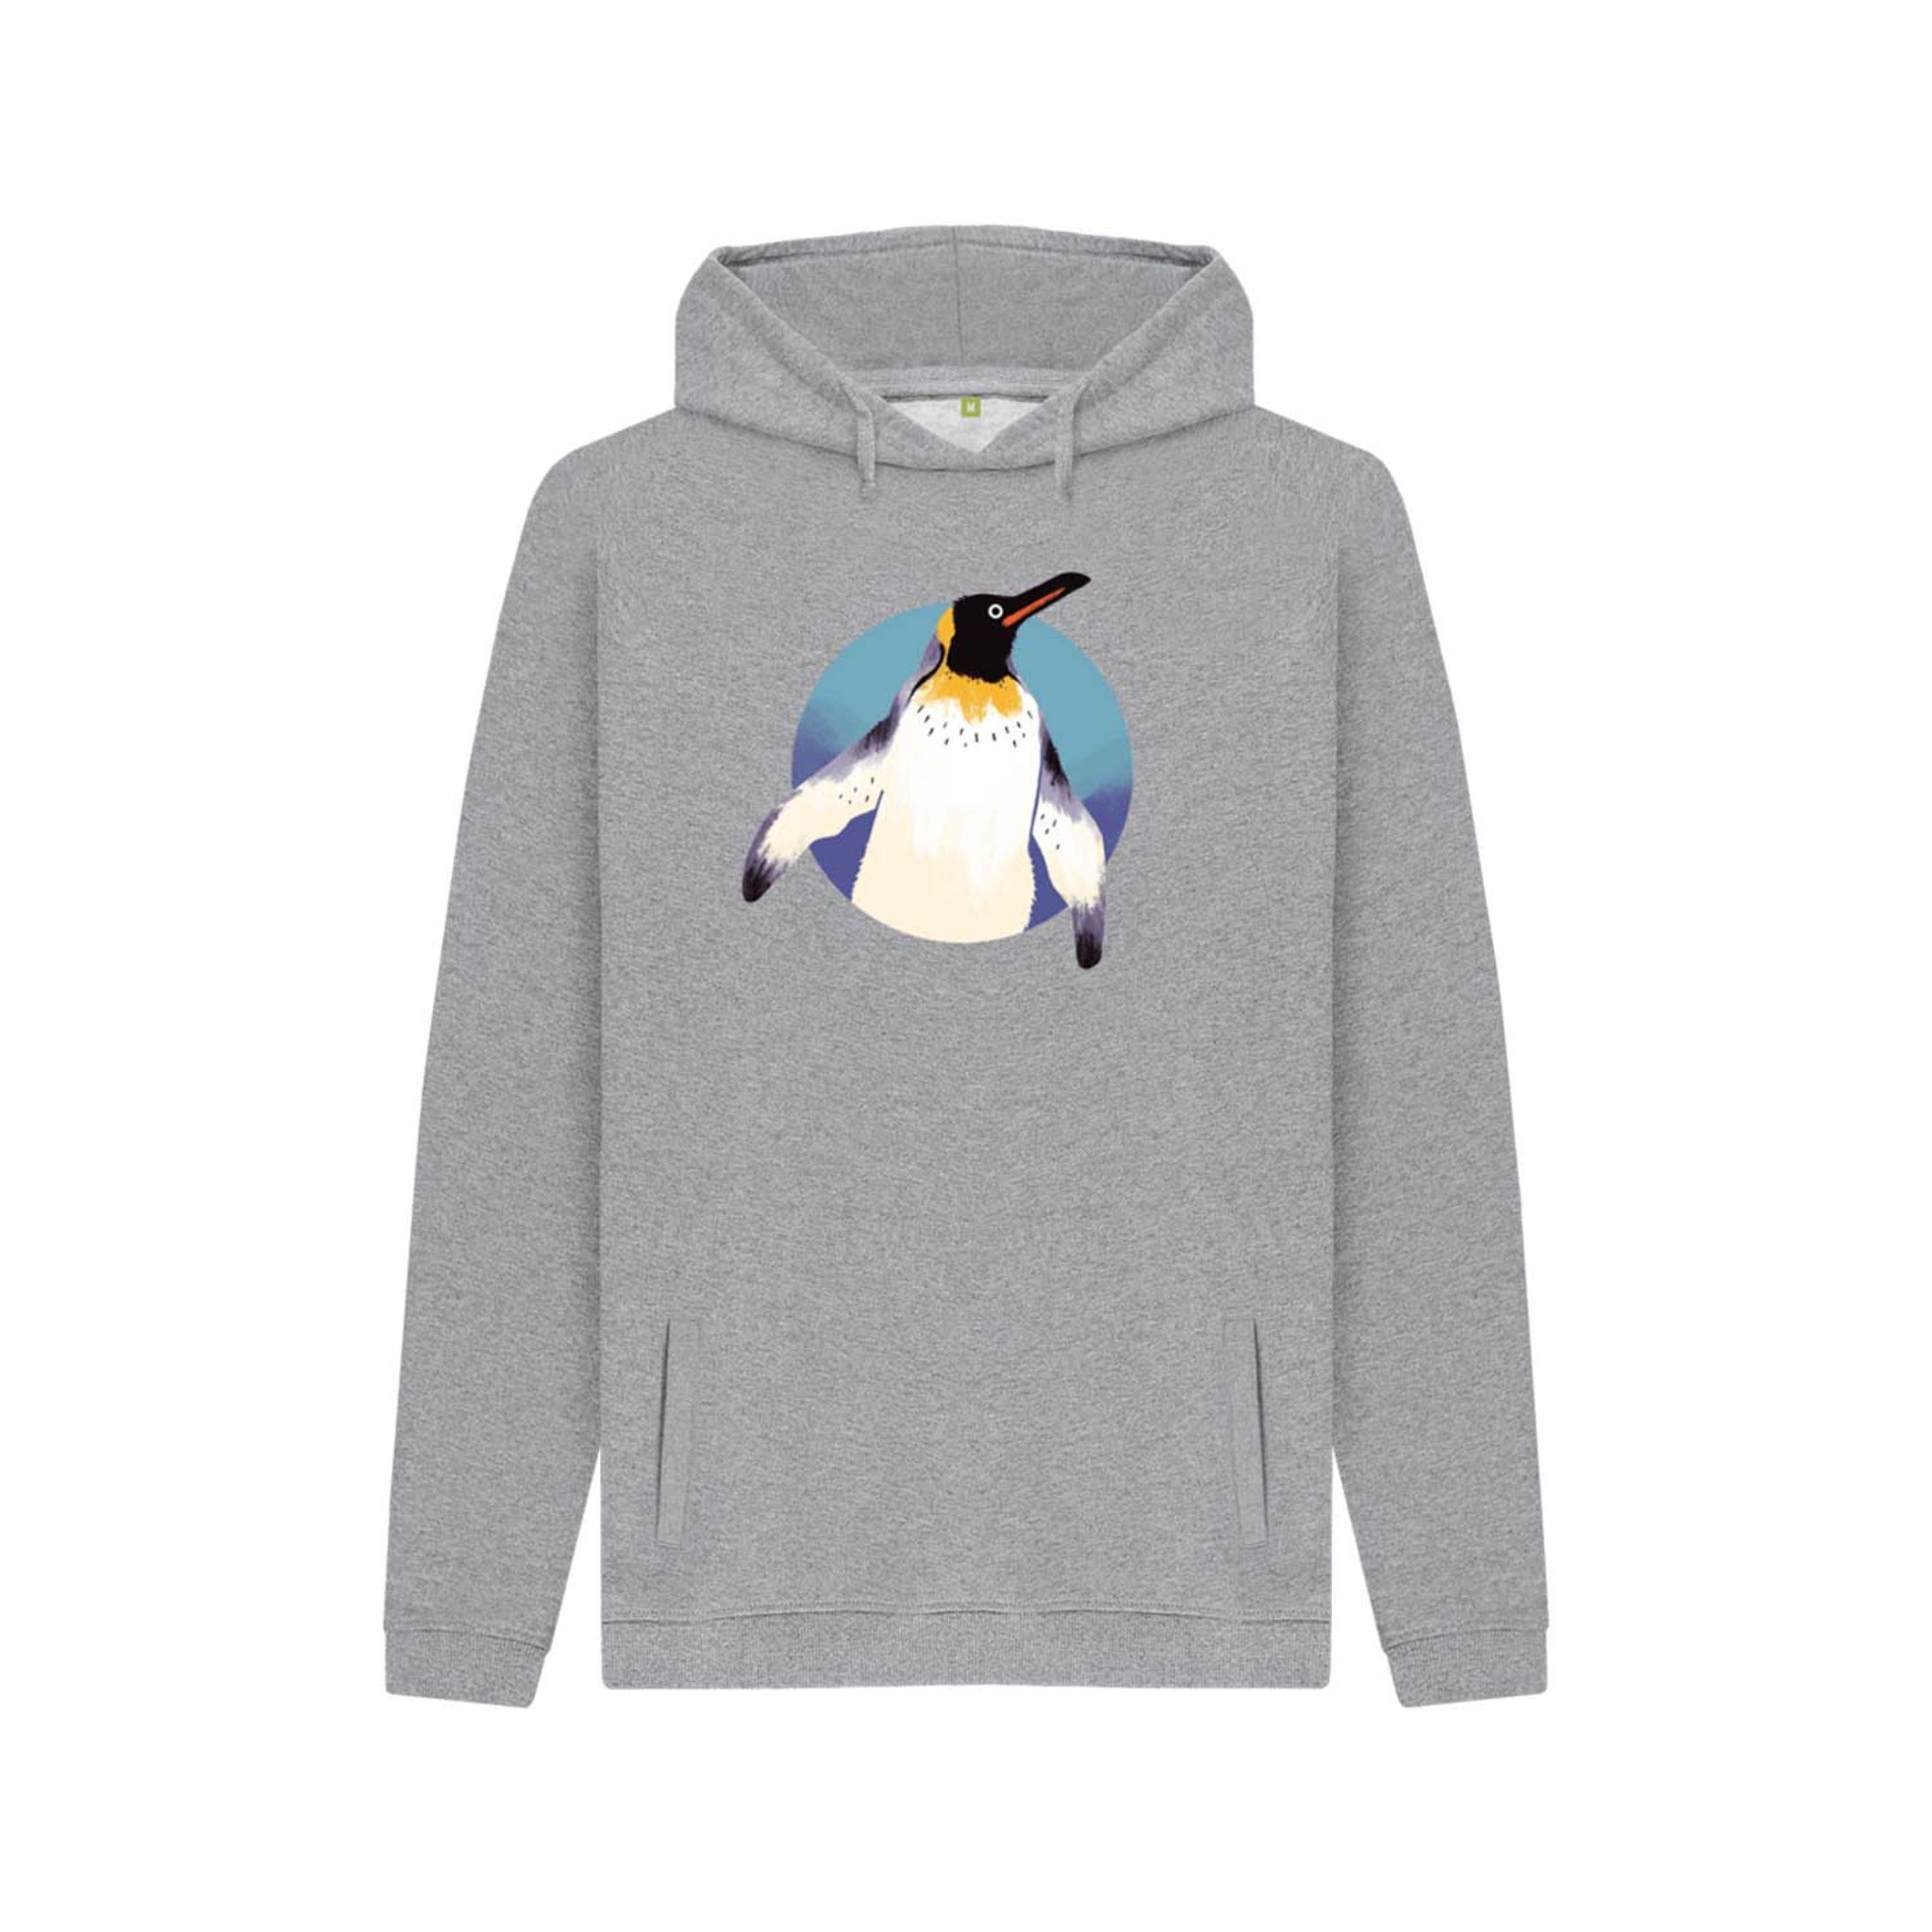 Adult's ZSL Penguin Hoodie - animal print hoodie